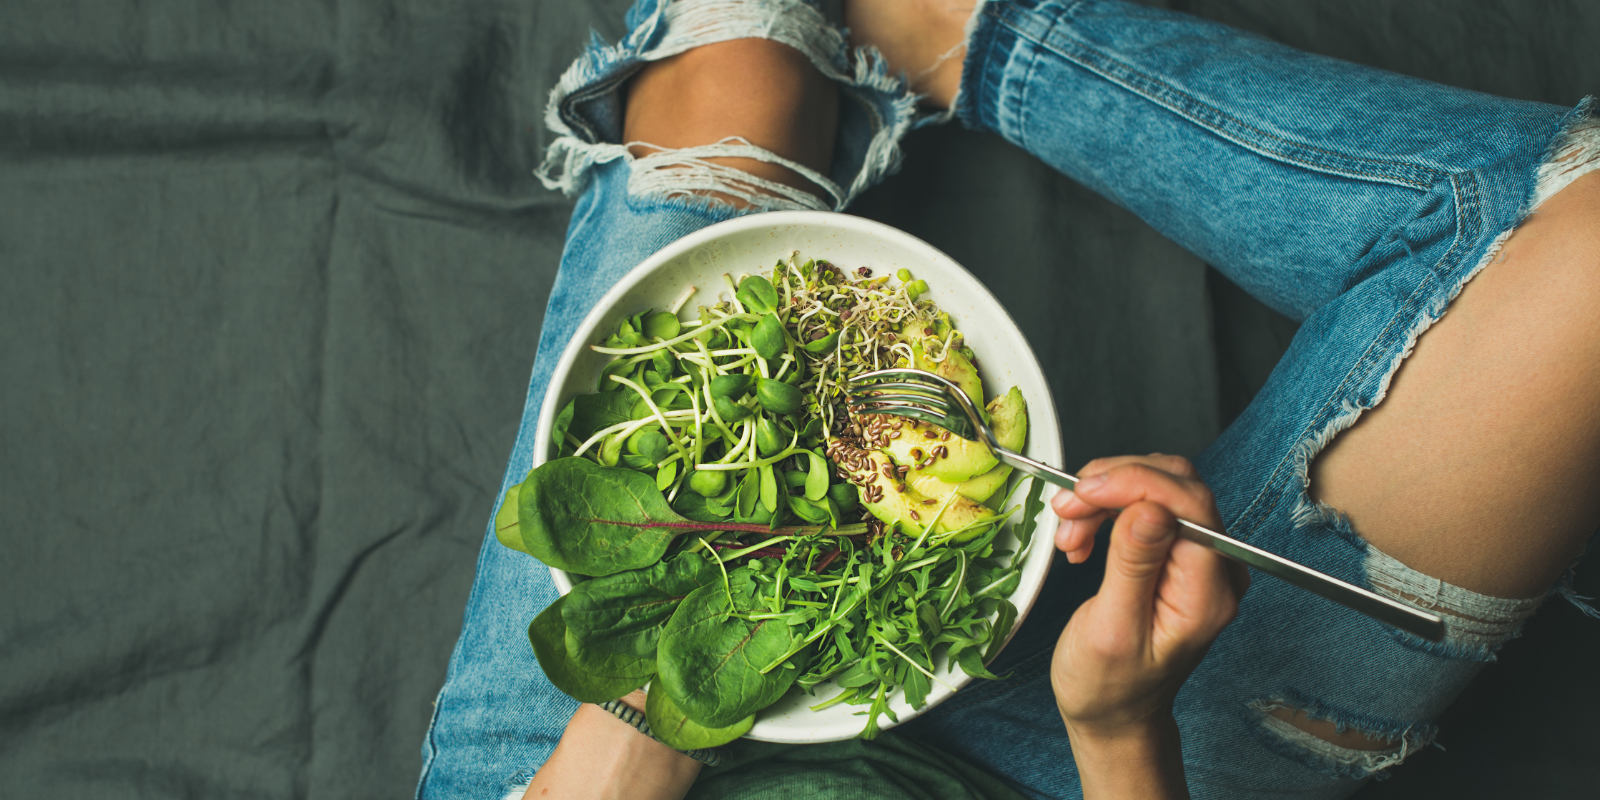 Frau isst Salat mit grünem Blattgemüse